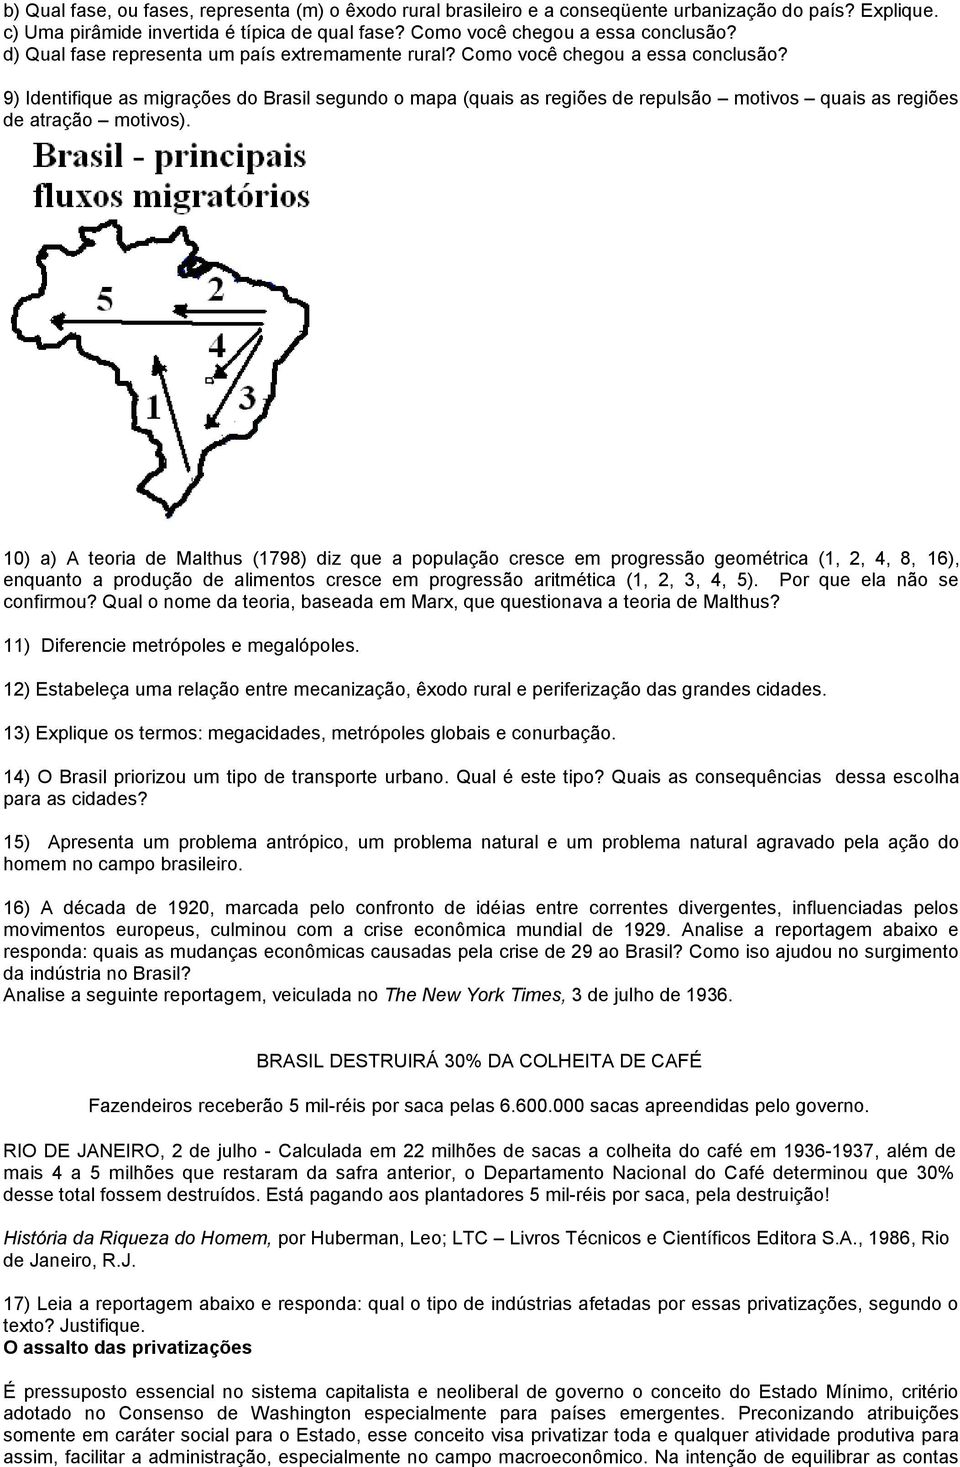 9) Identifique as migrações do Brasil segundo o mapa (quais as regiões de repulsão motivos quais as regiões de atração motivos).